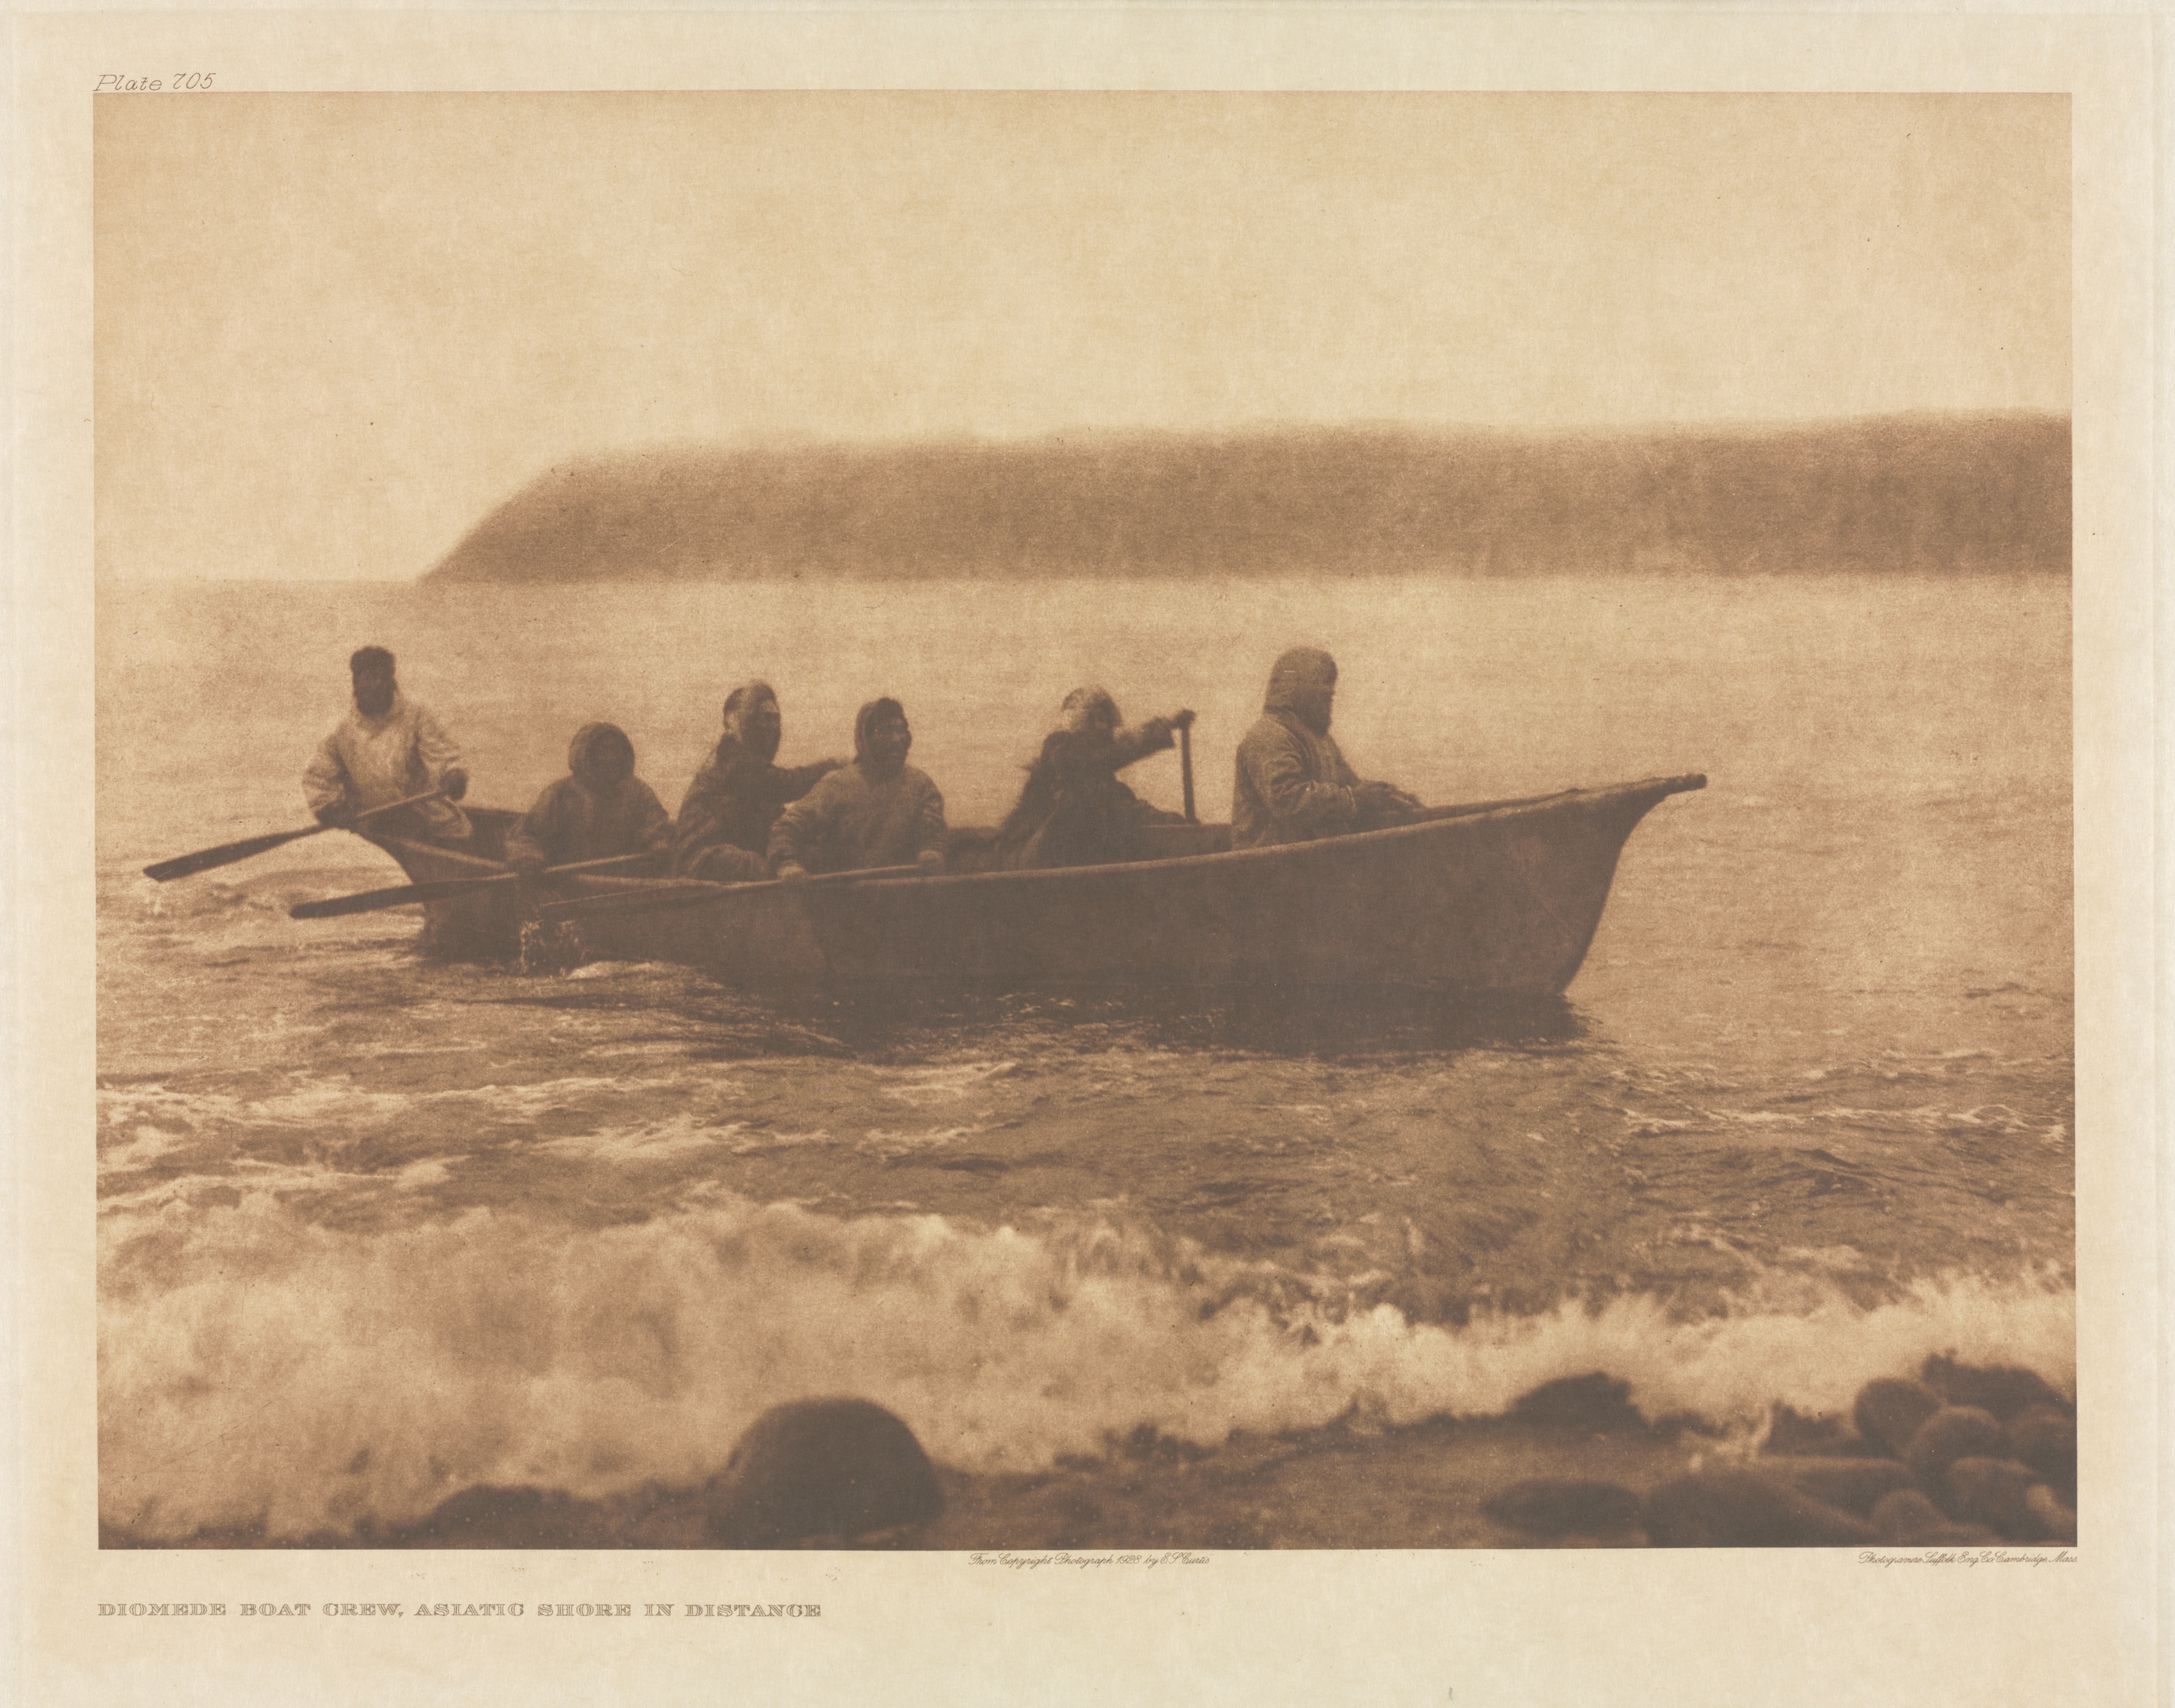 Portfolio XX, Plate 705: Diomede Boat Crew